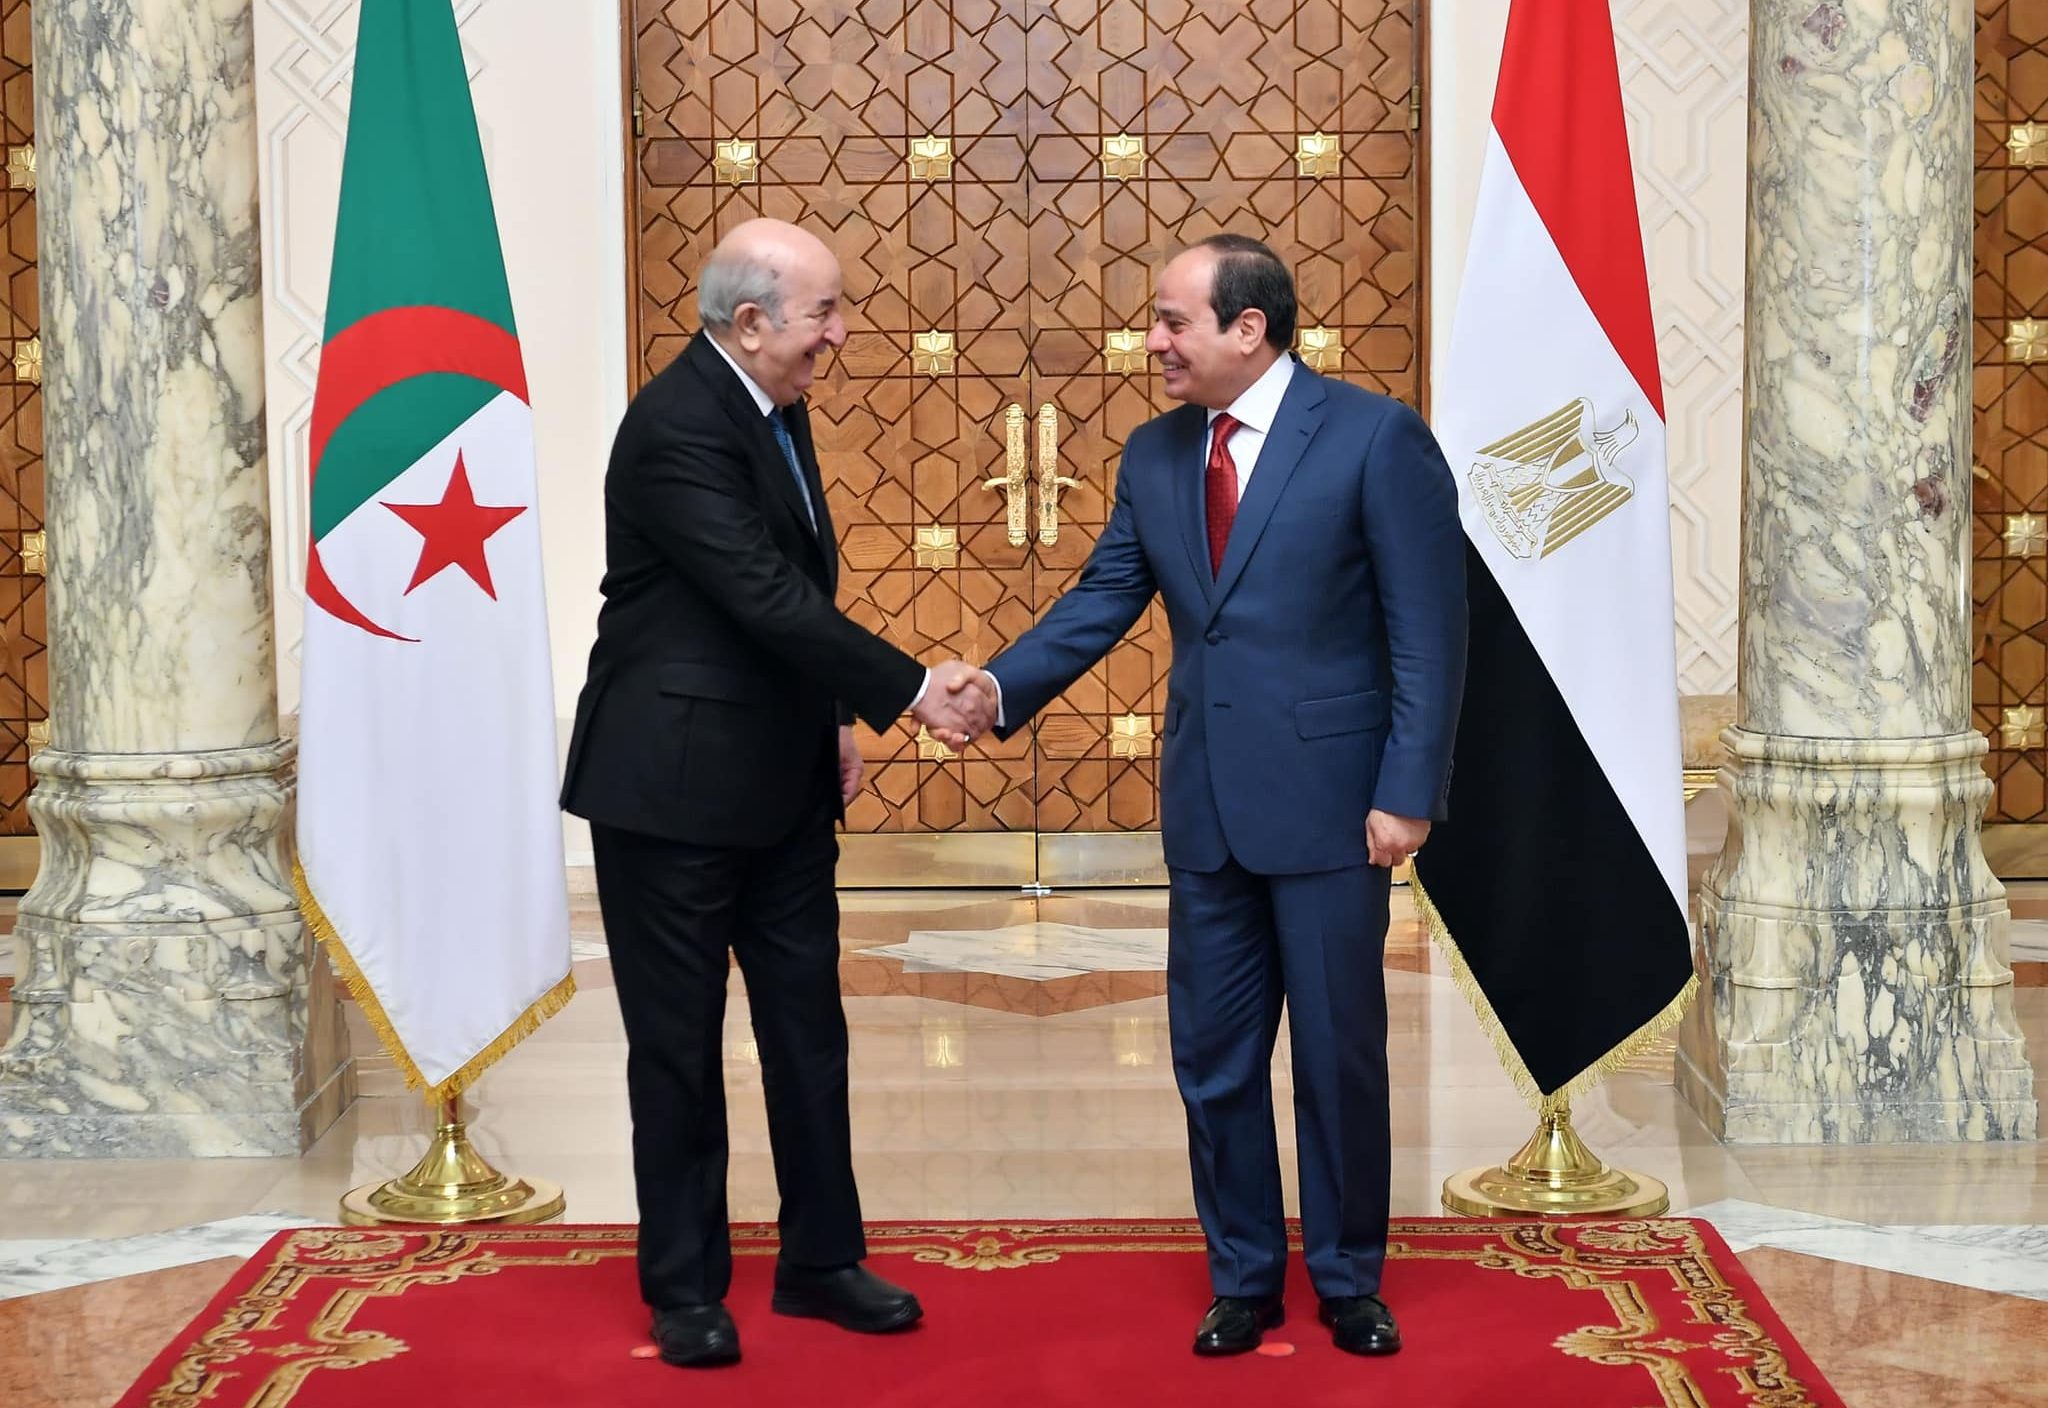 Algerian President Tebboune arrives in Egypt for official visit | Mena ...